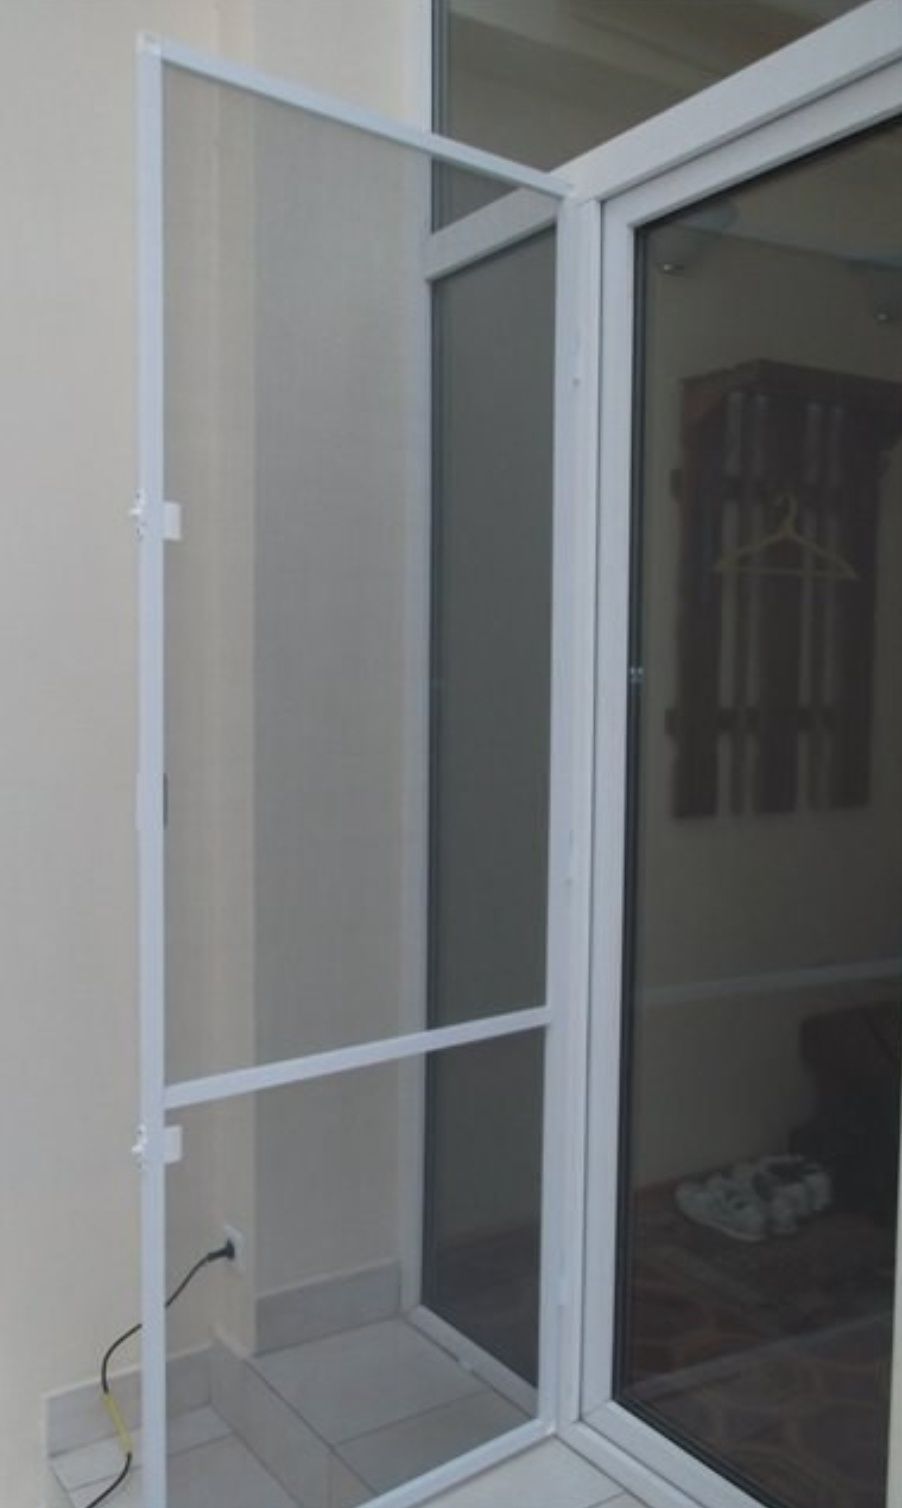 Москитные сетки на окна и двери от производителя/Буча Ирпень/Доставка